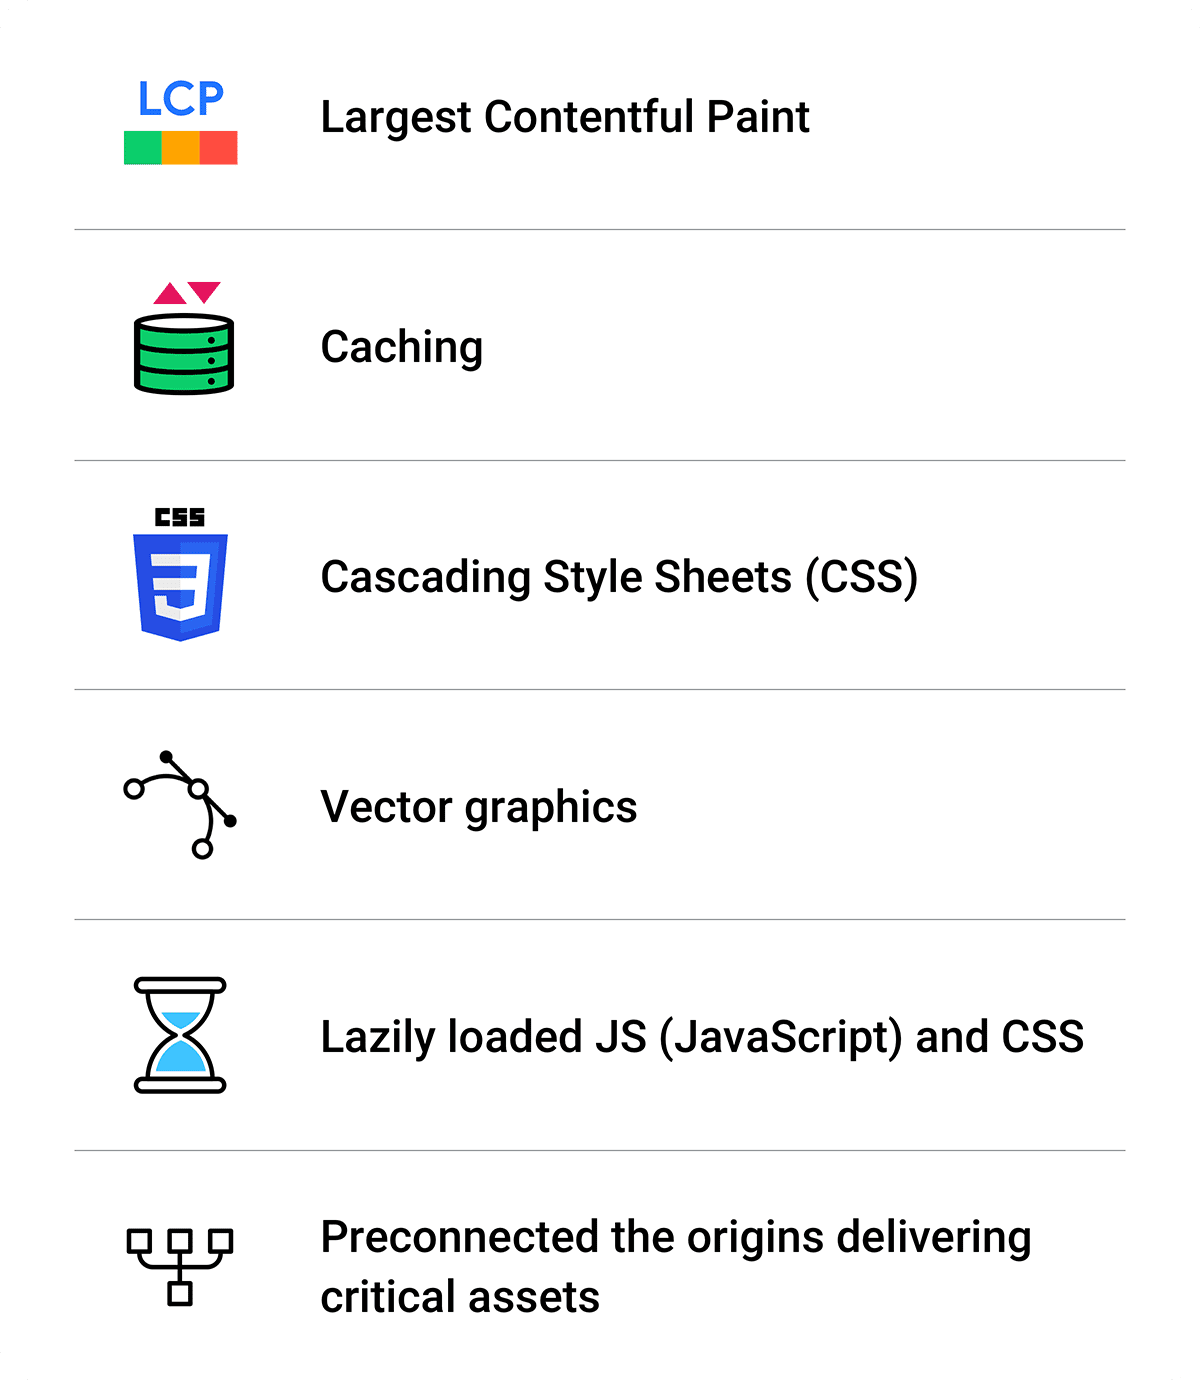 Ringkasan pengoptimalan: Largest Contentful Paint, Cache, CSS, grafik vektor, JS dan CSS yang dimuat secara lambat, melakukan prakoneksi.